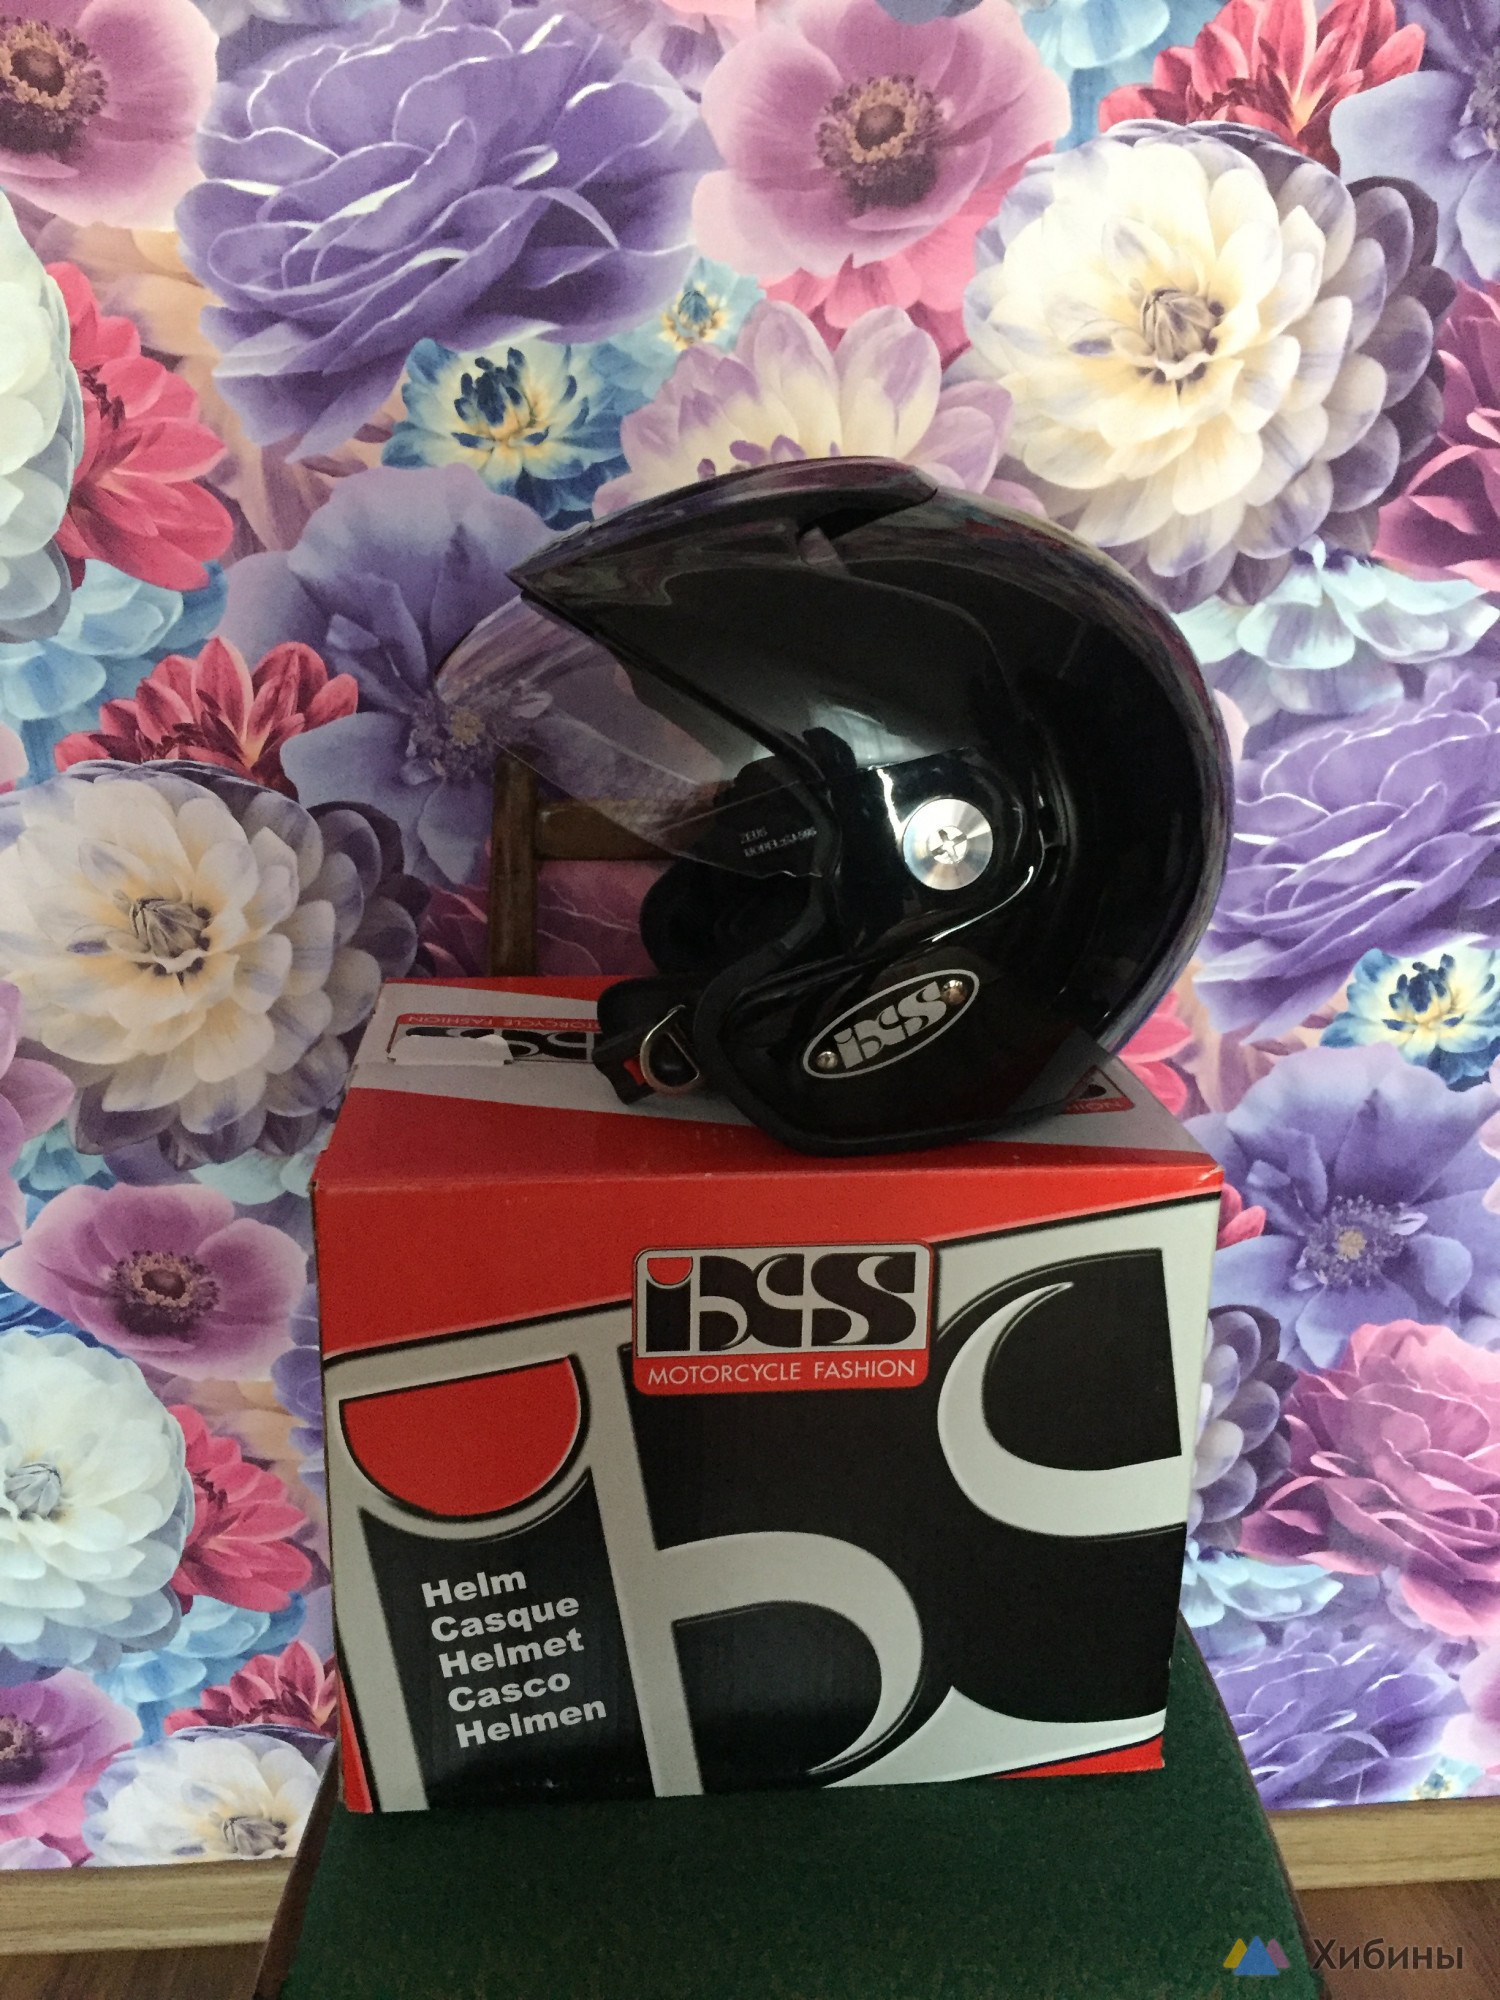 Продам открытый шлем со стеклом HX 114